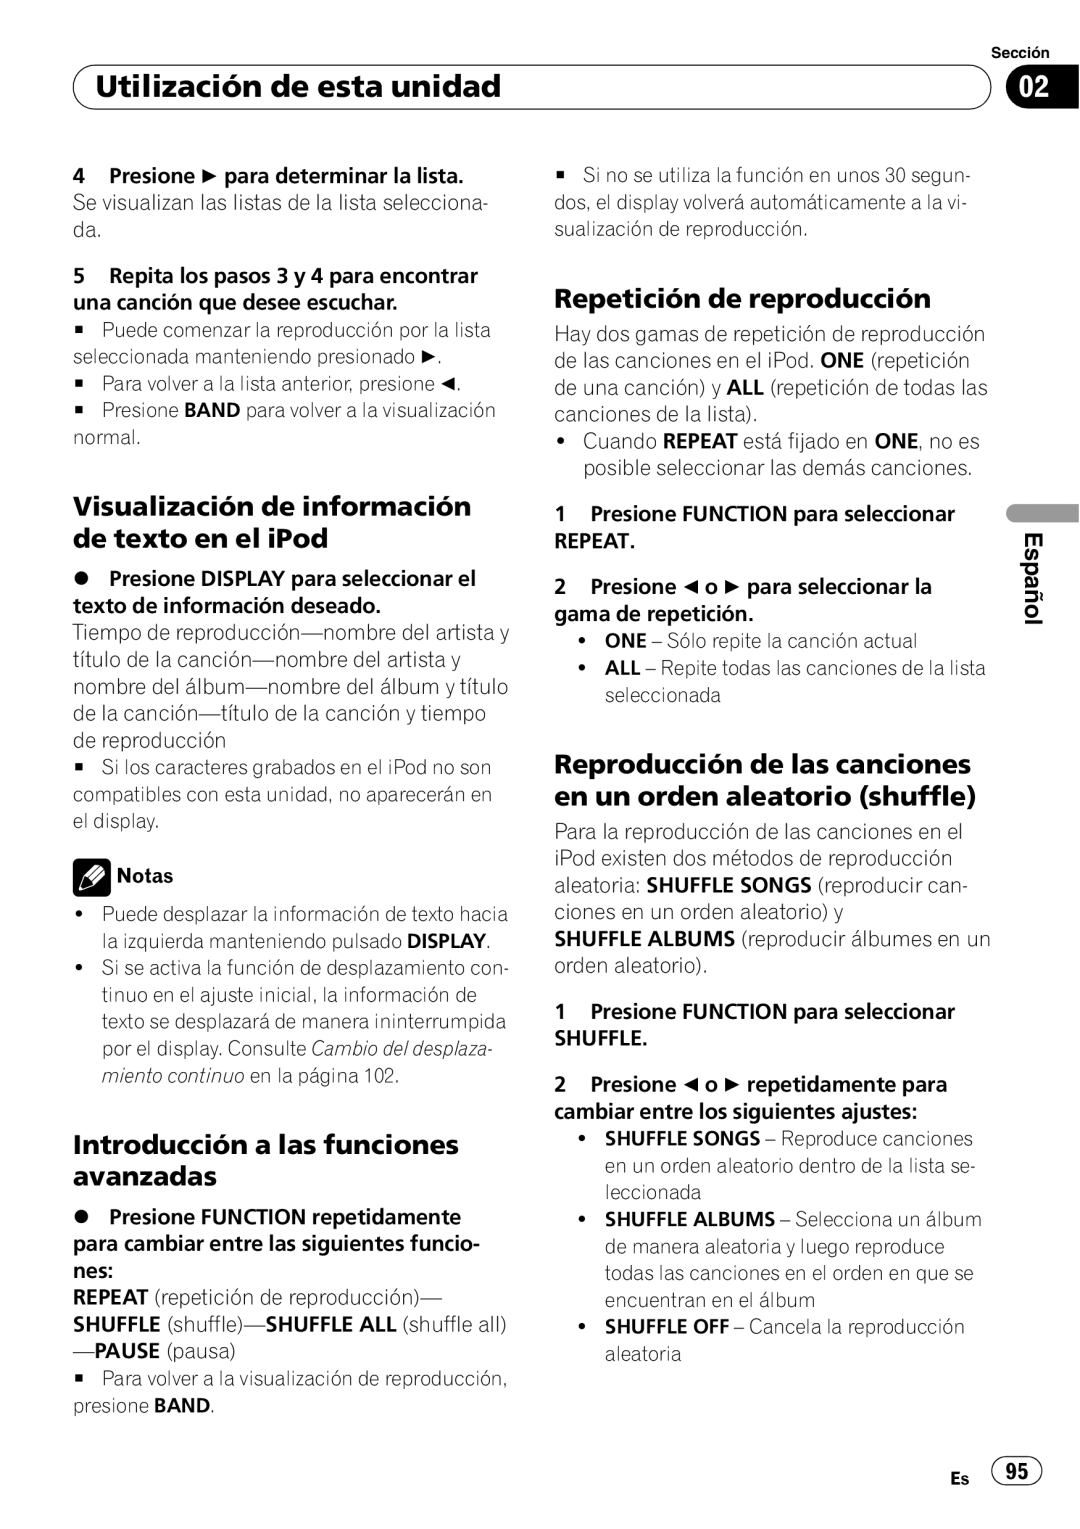 Pioneer SRC7127-B/N operation manual Visualización de información de texto en el iPod, Repetición de reproducción, Español 